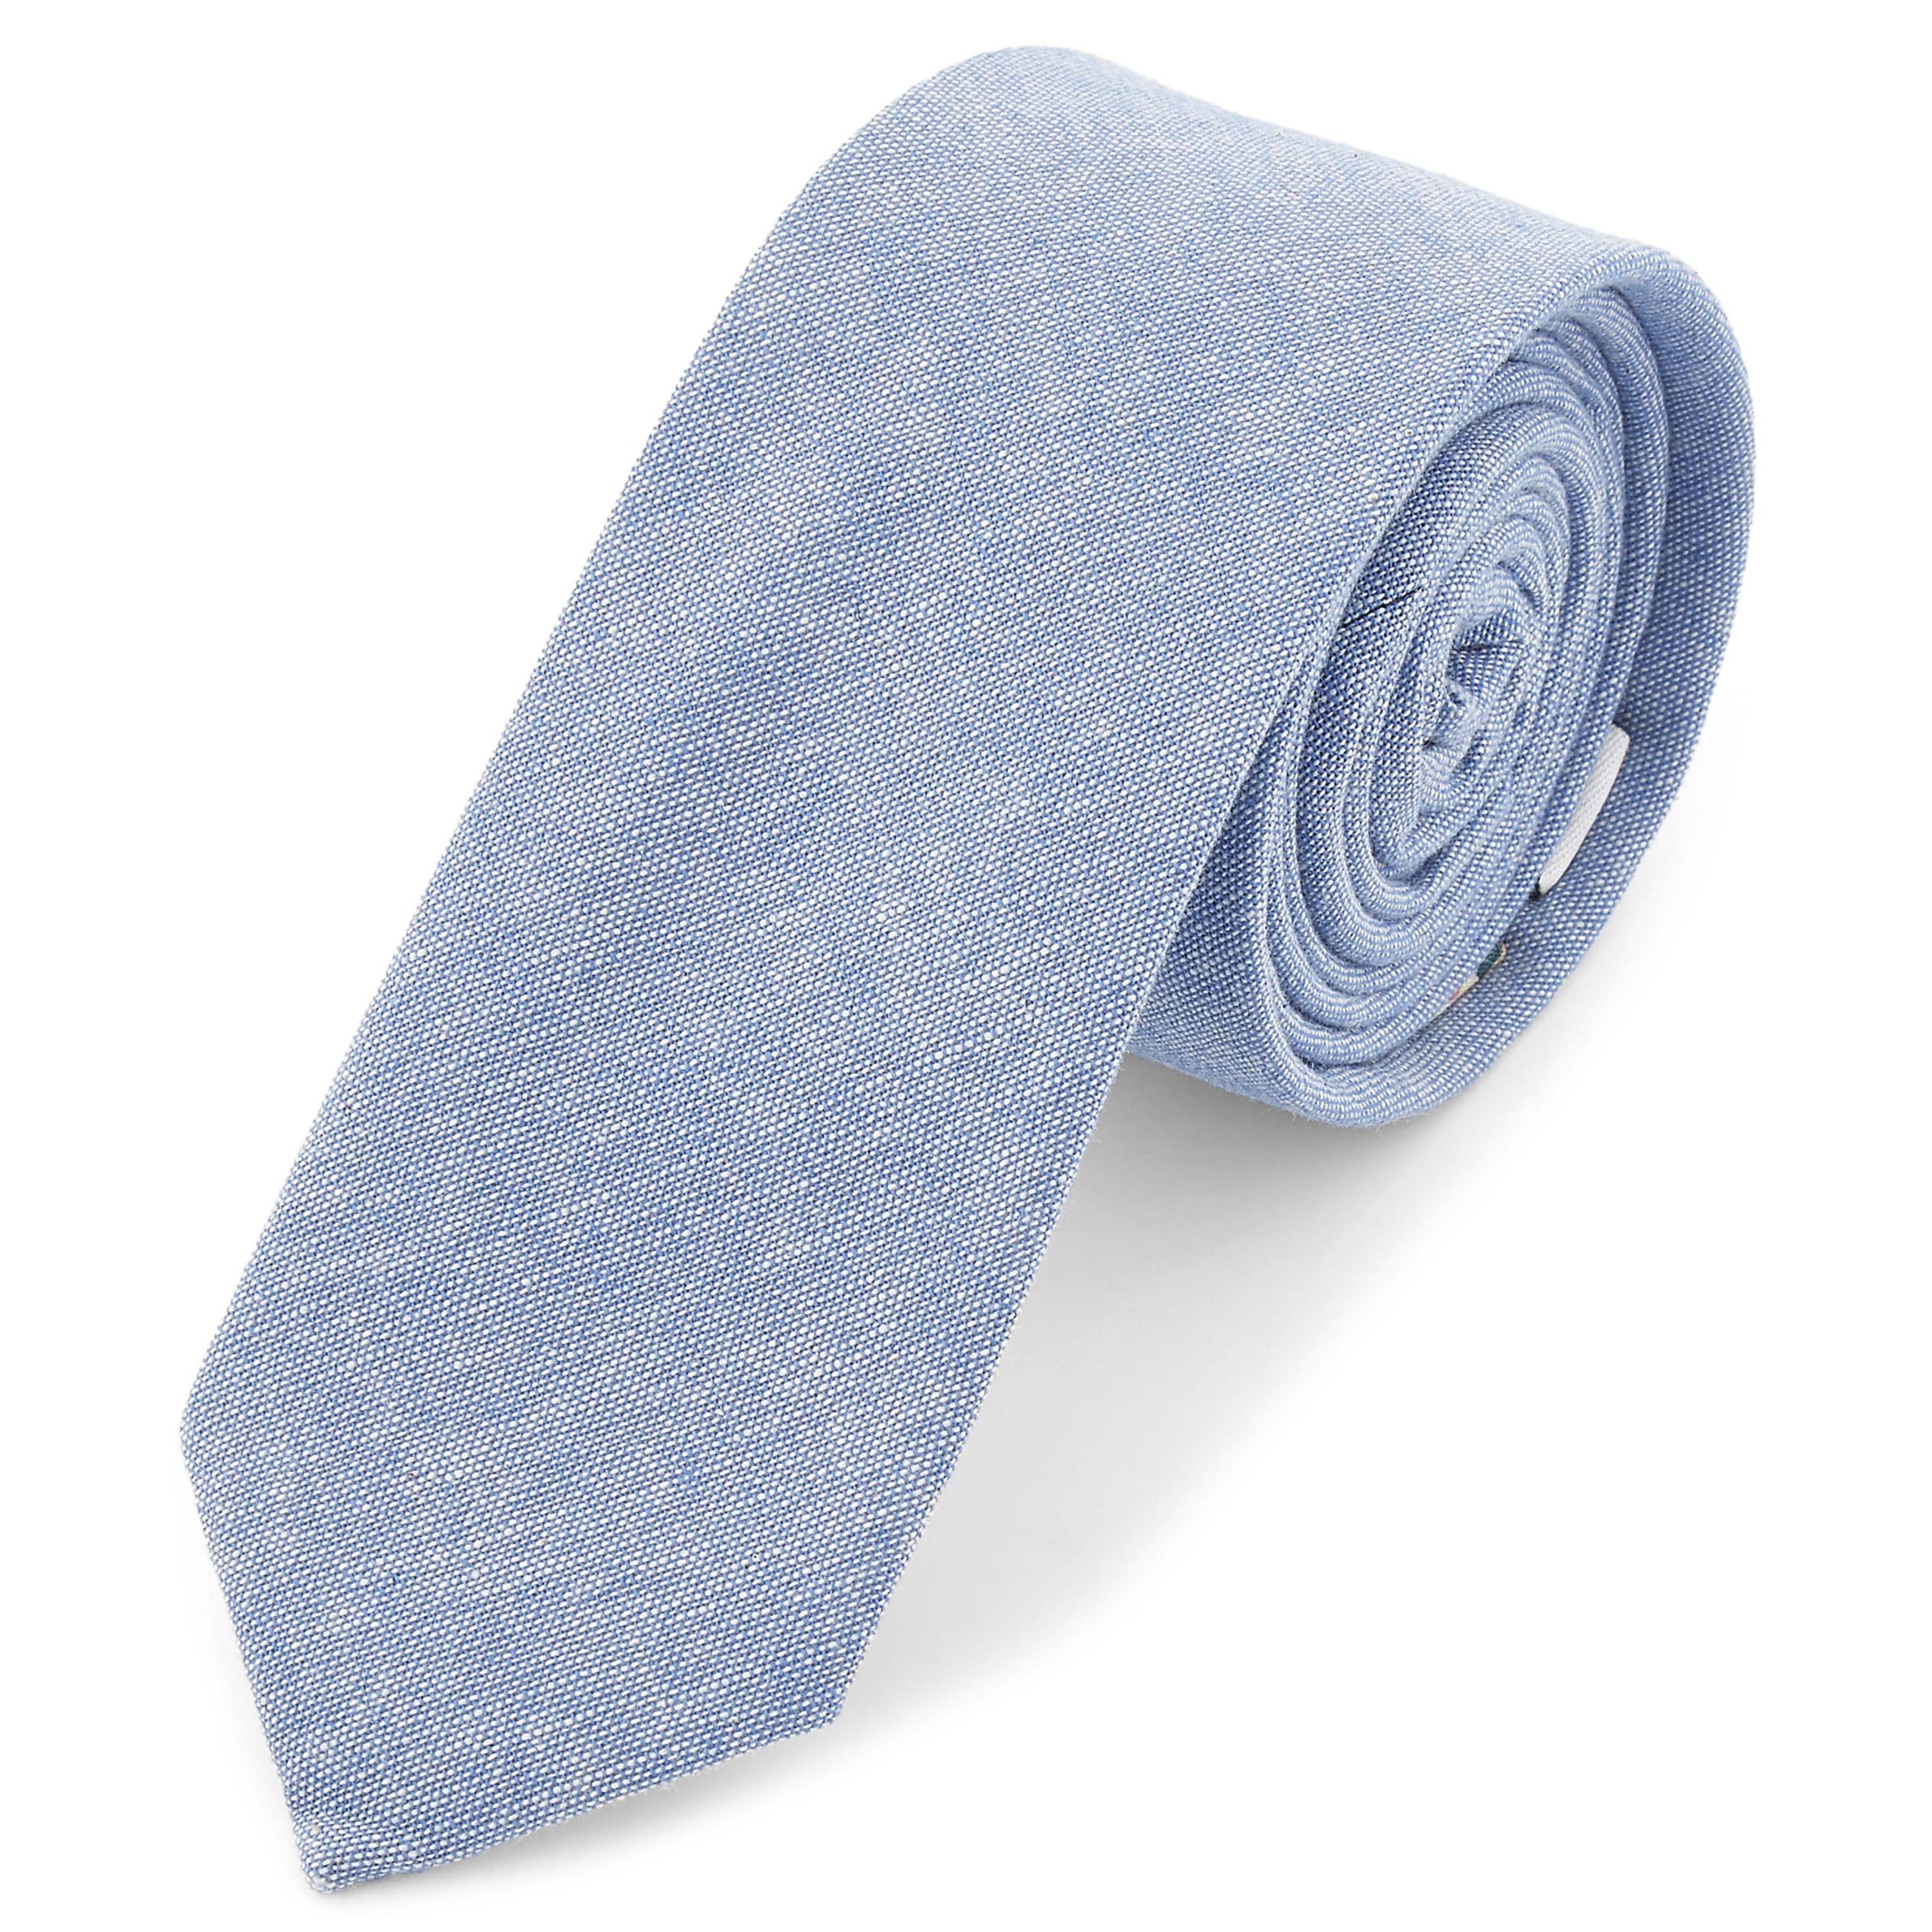 Cravate bleu pastel